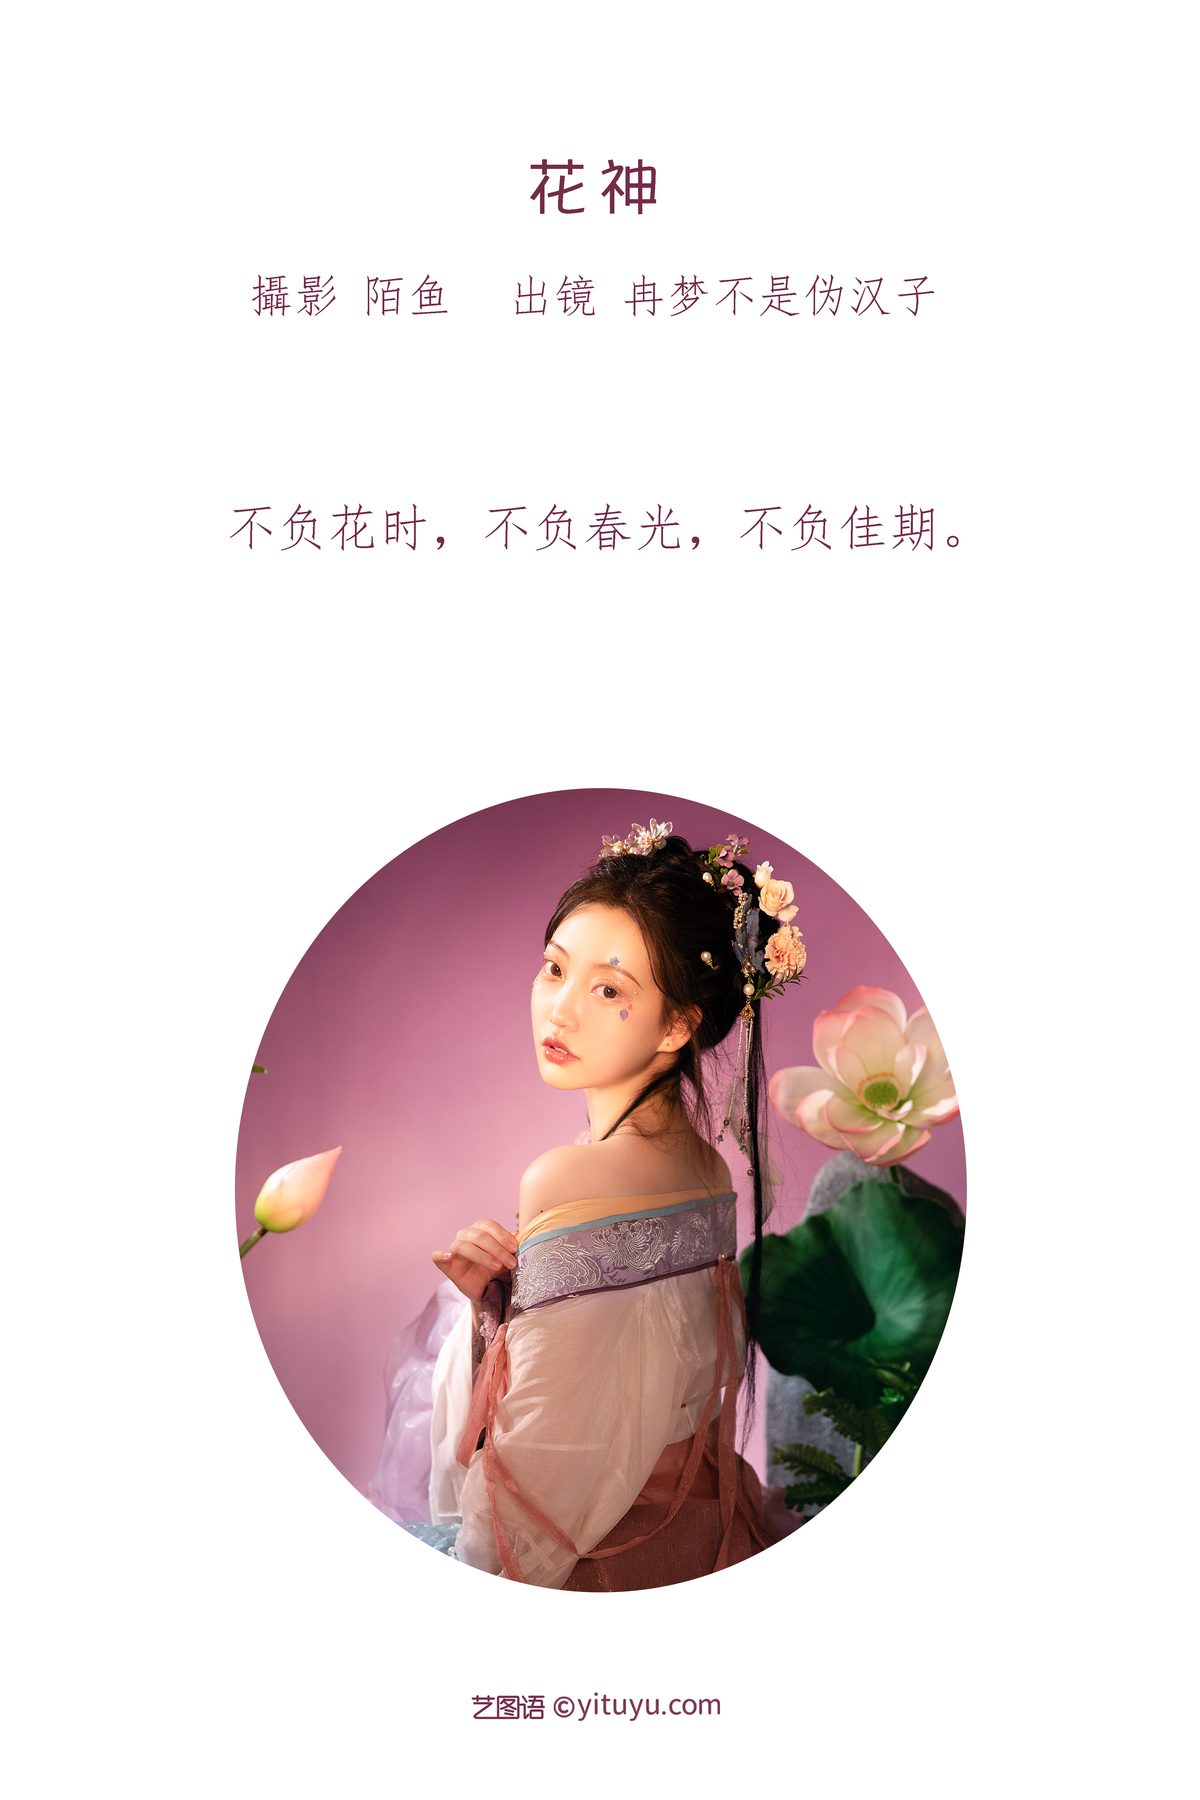 YiTuYu艺图语 Vol 3451 Ran Meng Bu Shi Wei Han Zi 0002 5404034622.jpg